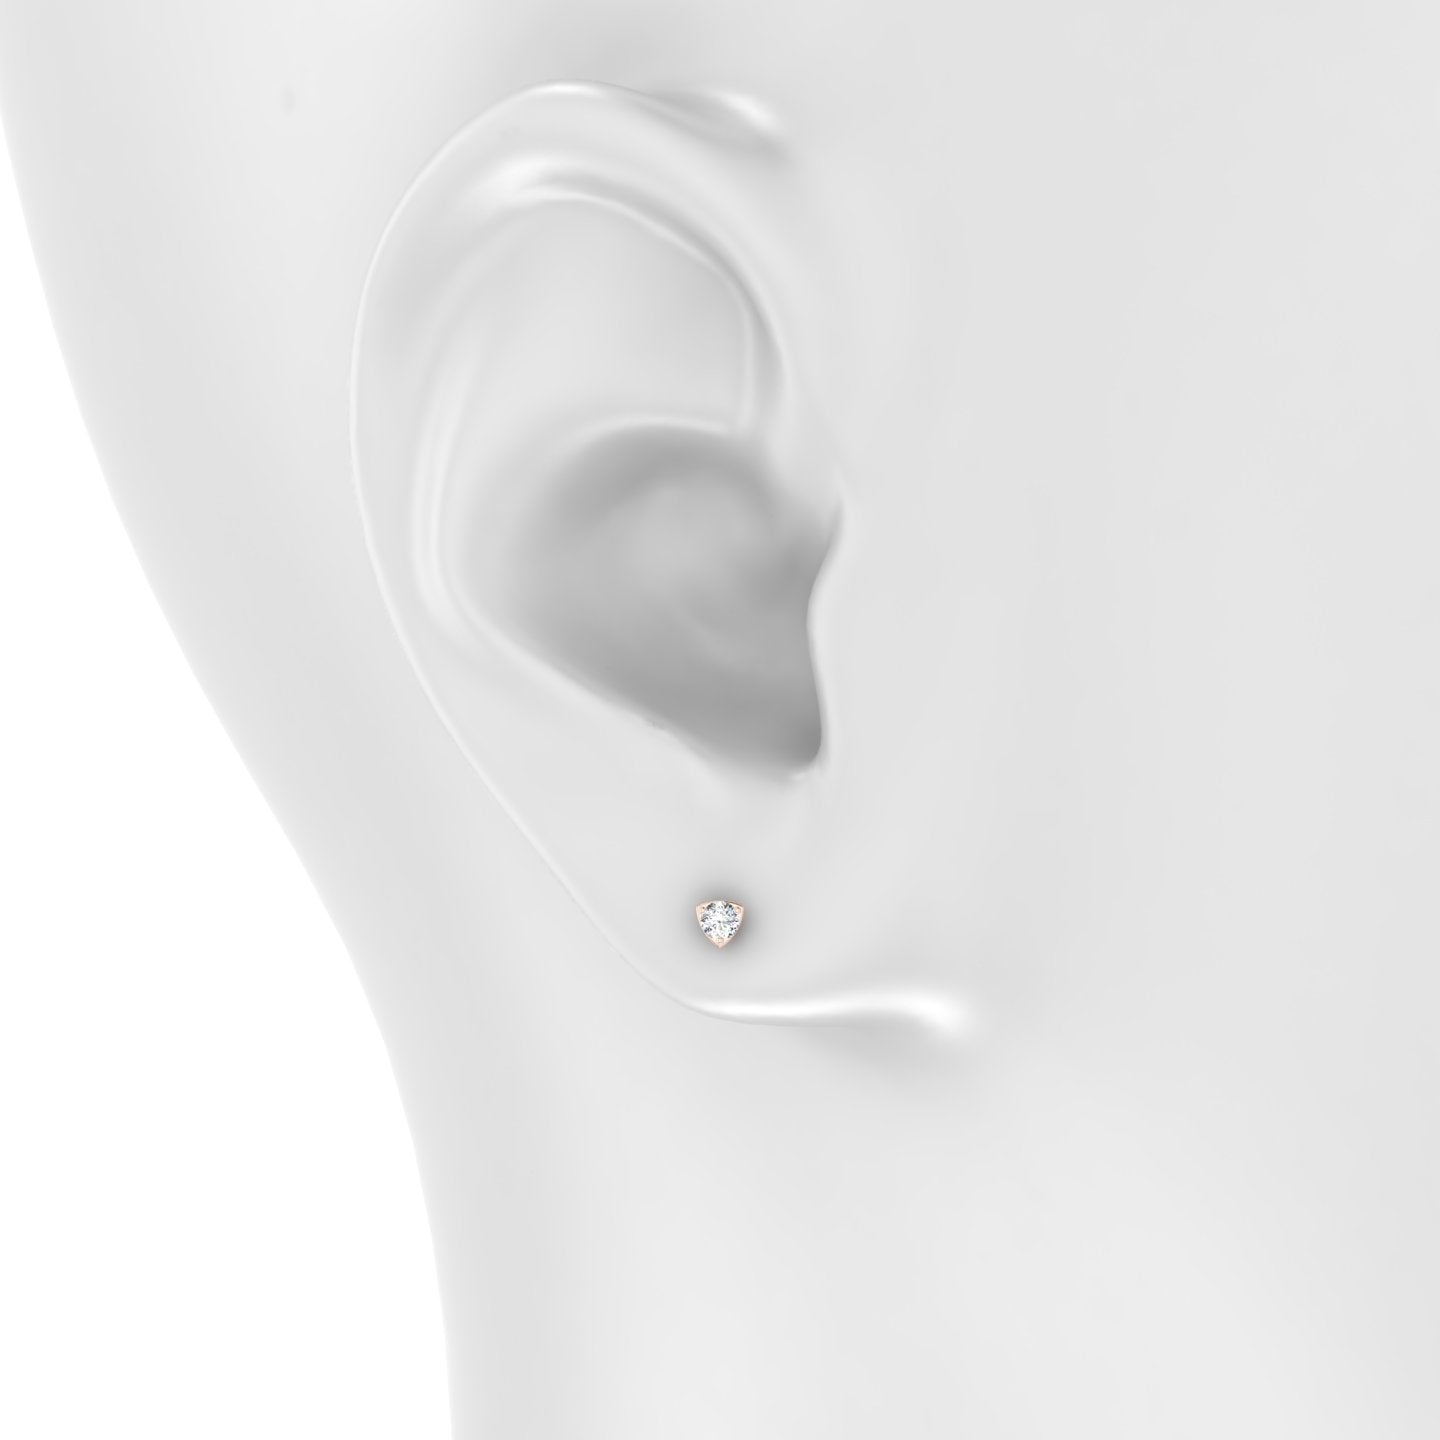 Leda | 18k Rose Gold 3.5 mm Round Diamond Earring